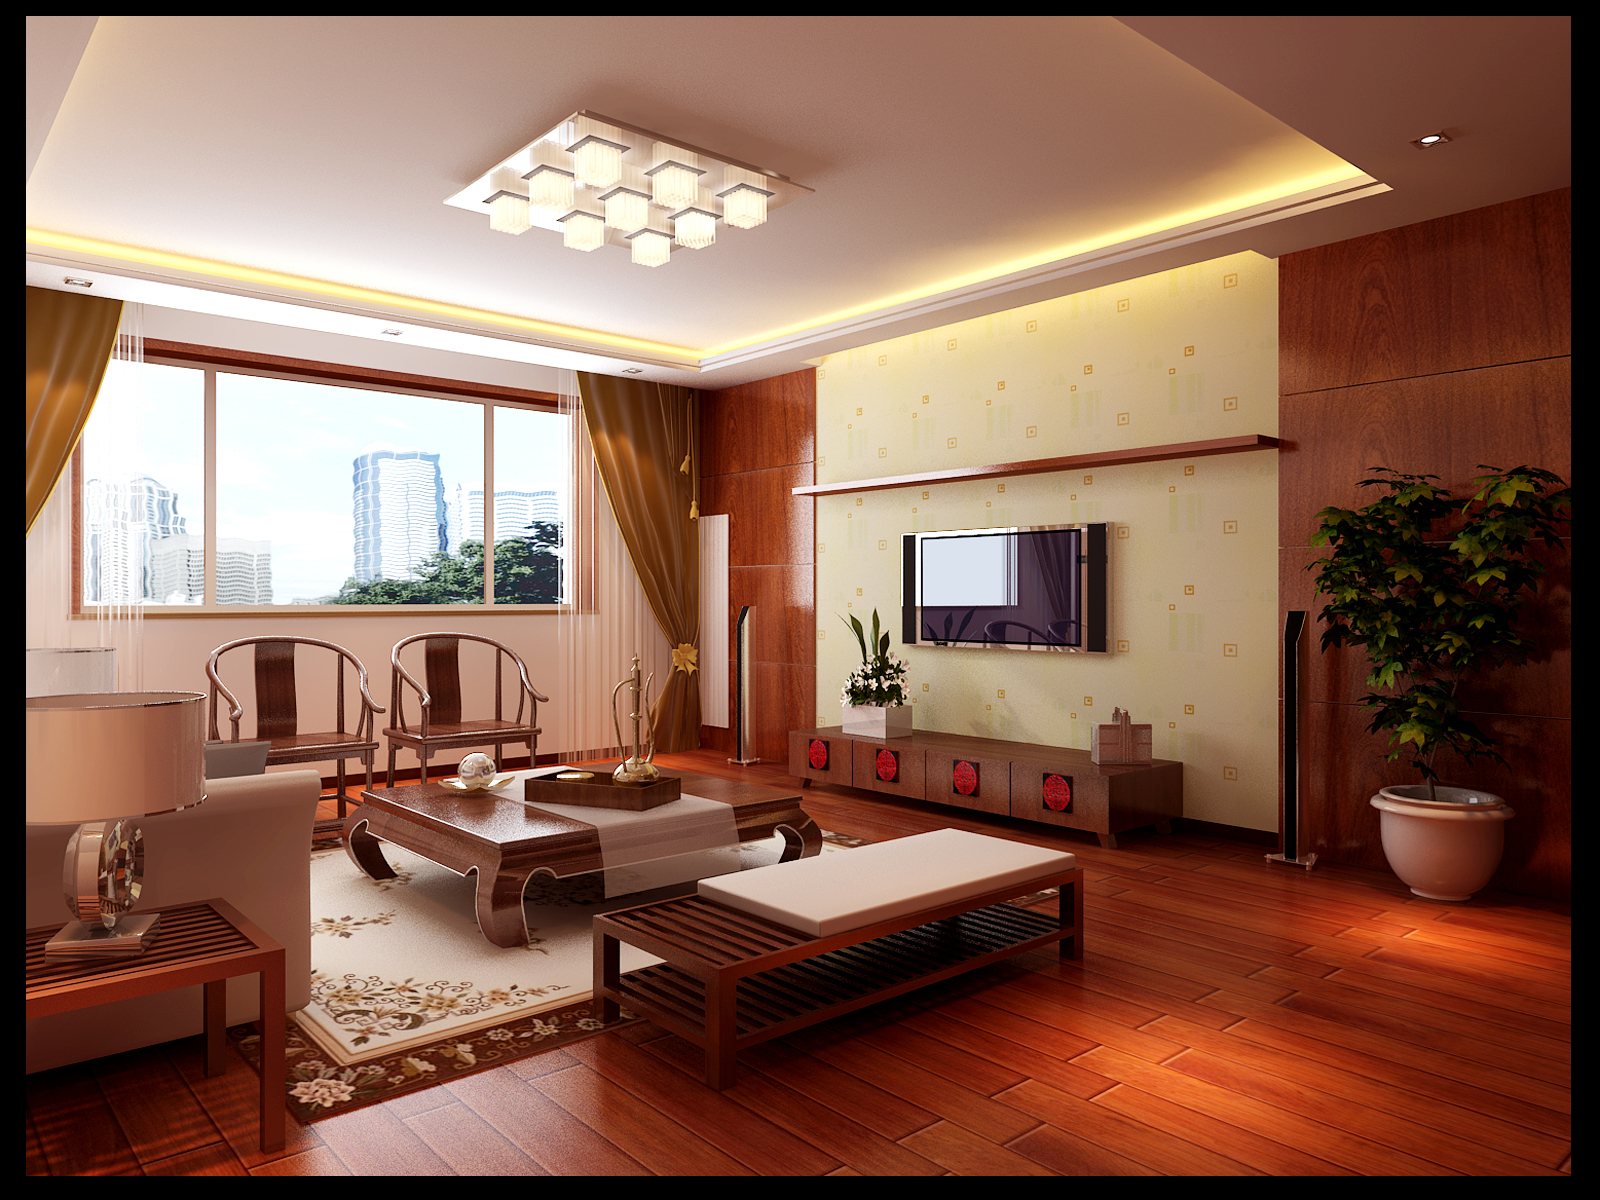 新中式 古朴优雅 客厅图片来自居然元洲装饰小杨在(紫竹桥广电部长楼)禅意东方的分享